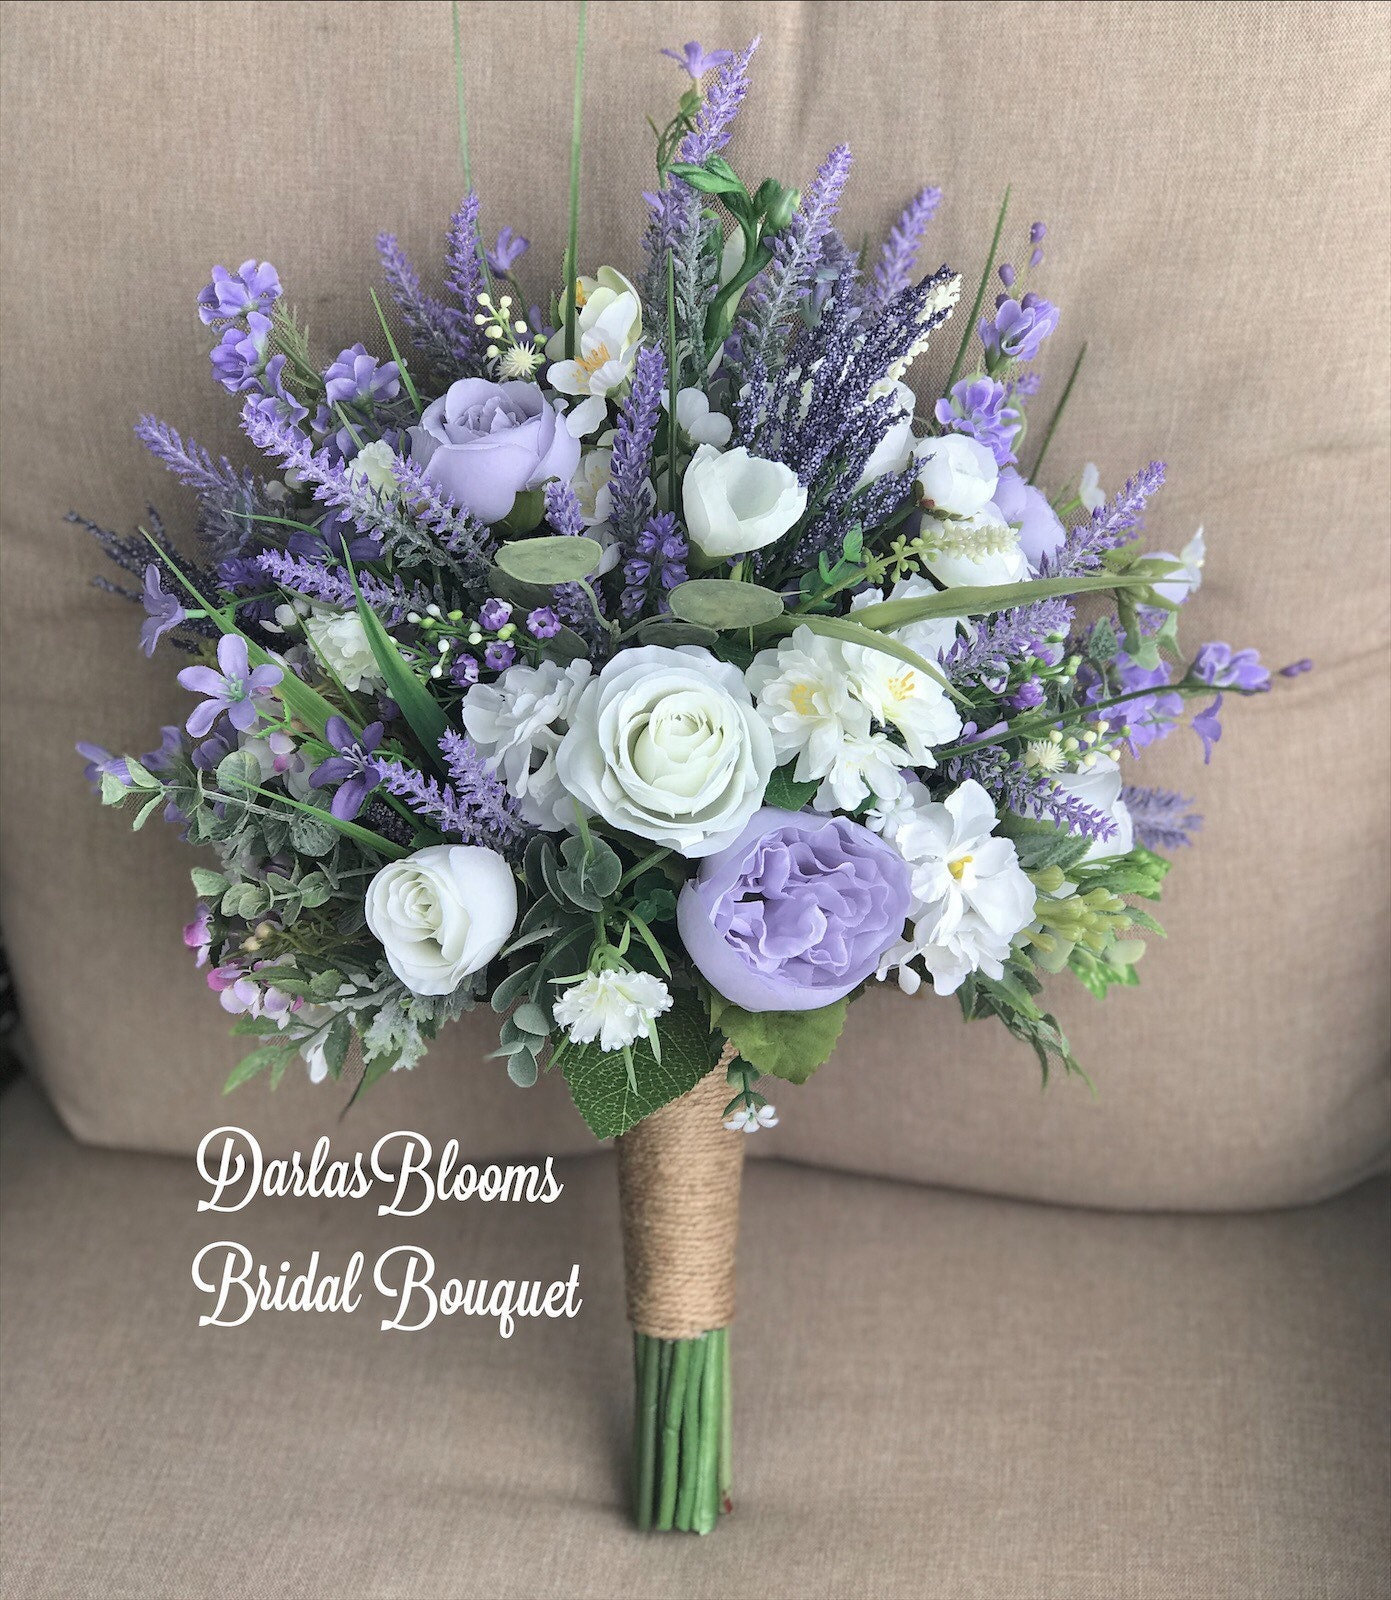 Natural Dried Lavender Bundles - Freshly Harvested Lavender Bunch Royal  Velvet Decorative Flowers Bouquet for Wedding DIY Home Party (Lavender-120g)